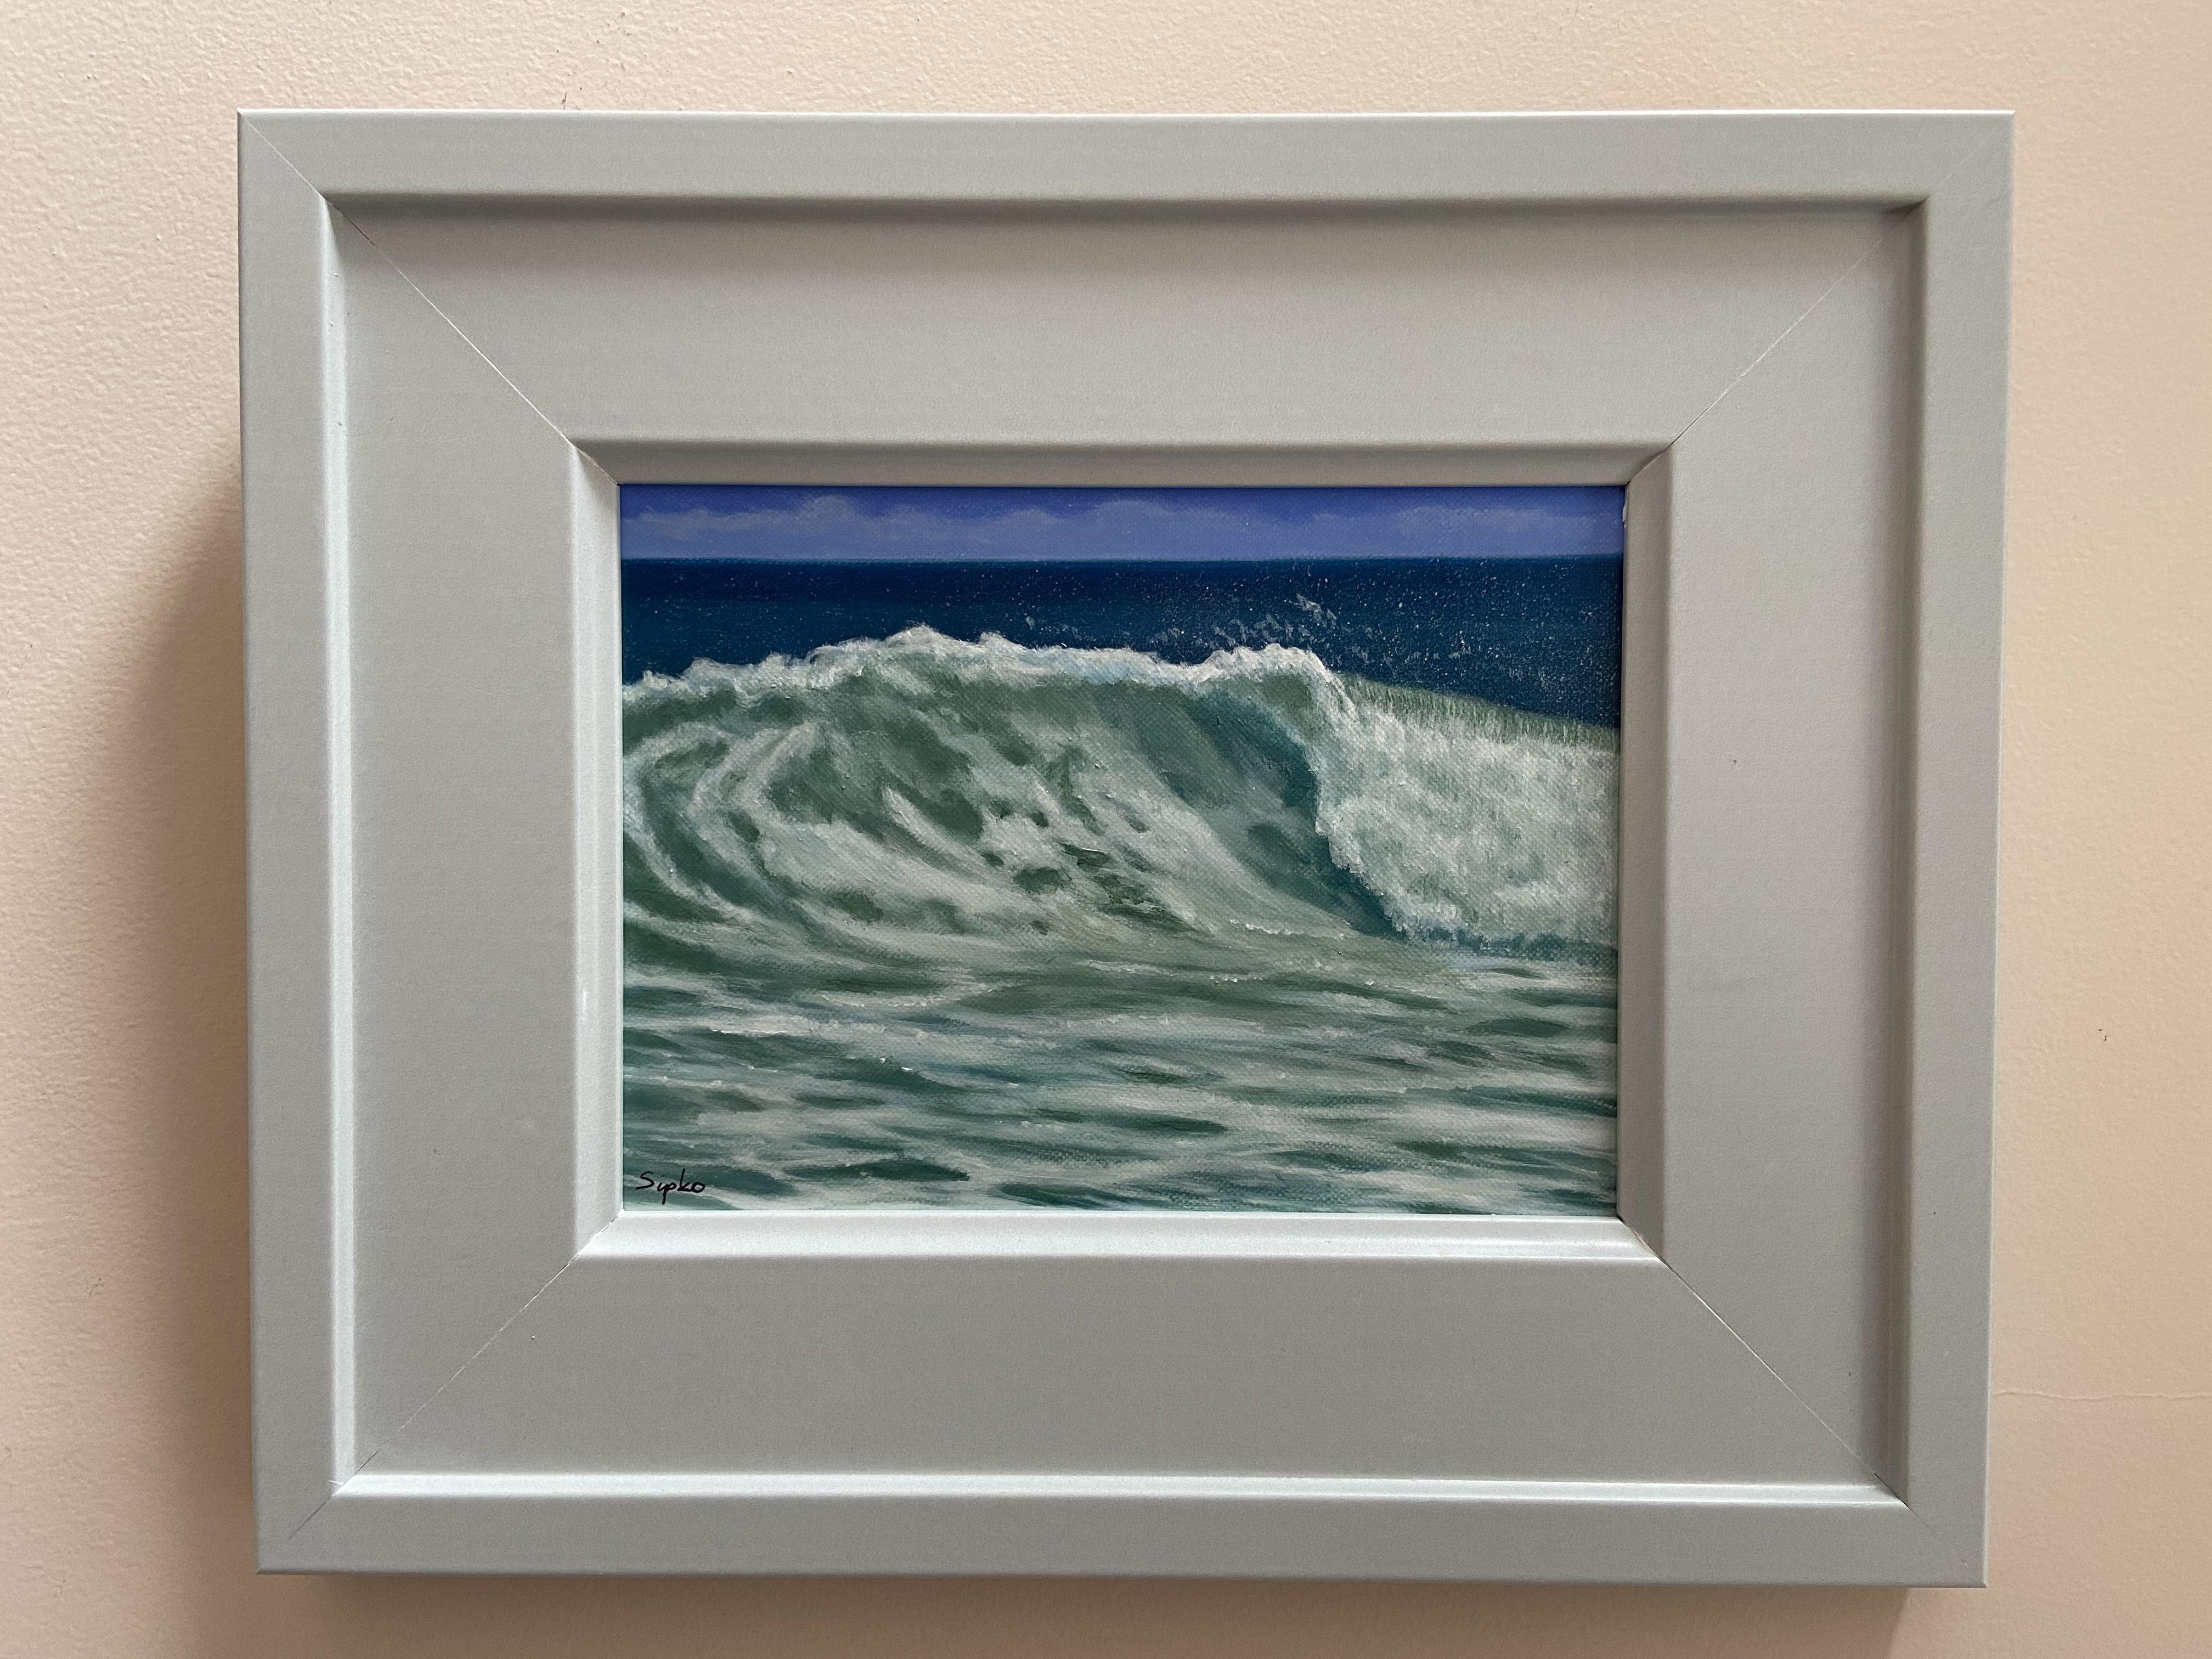 Cette peinture marine, encadrée et prête à être accrochée, représente une vague déferlante près du rivage.  Cette pièce est une huile sur un panneau de lin et vernie pour obtenir une finition semblable au verre.  Il a été encadré dans un cadre en